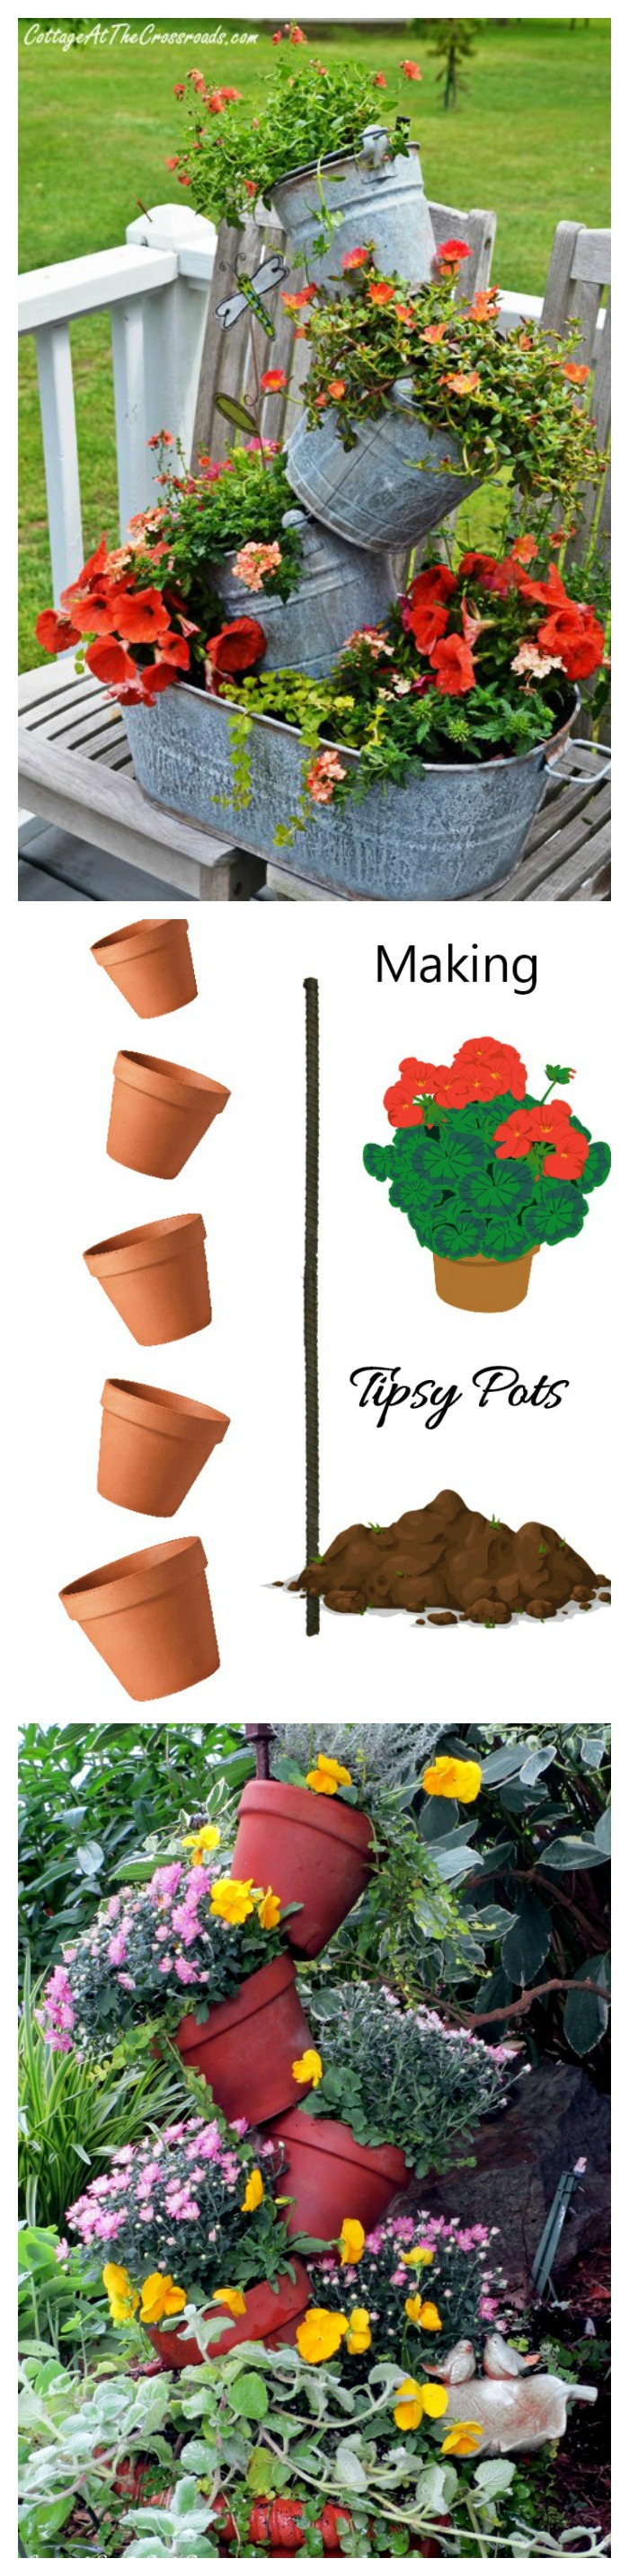 Mbjellësit më të mirë Topsy Turvy – Pots kreative të kopshtarisë